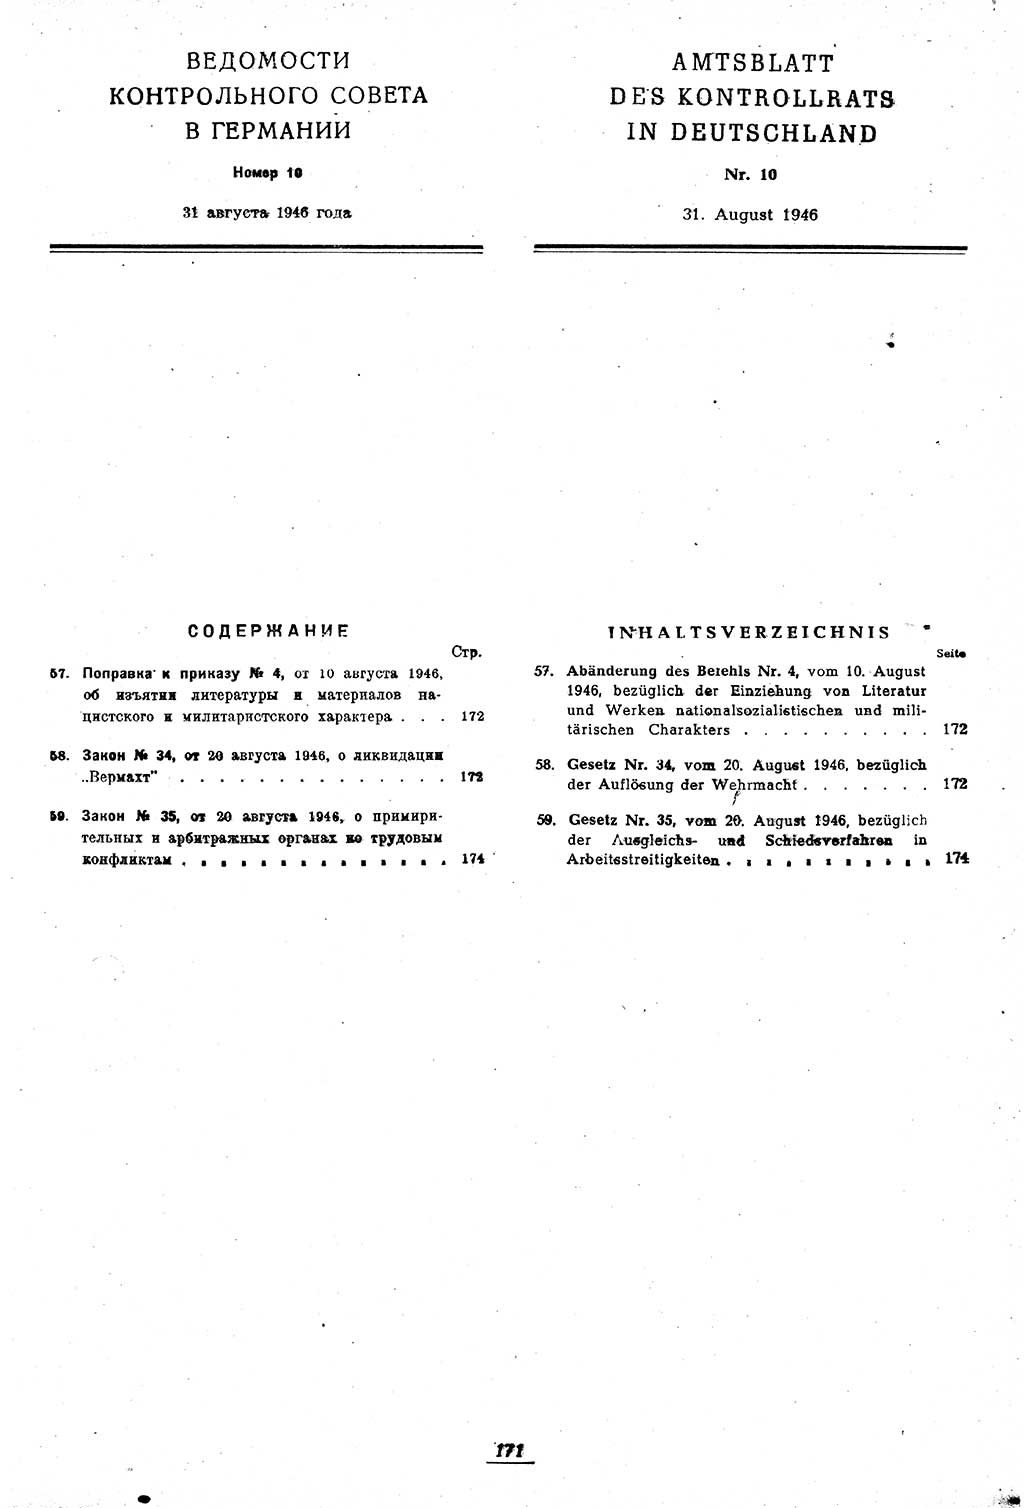 Amtsblatt des Kontrollrats (ABlKR) in Deutschland 1946, Seite 171/2 (ABlKR Dtl. 1946, S. 171/2)